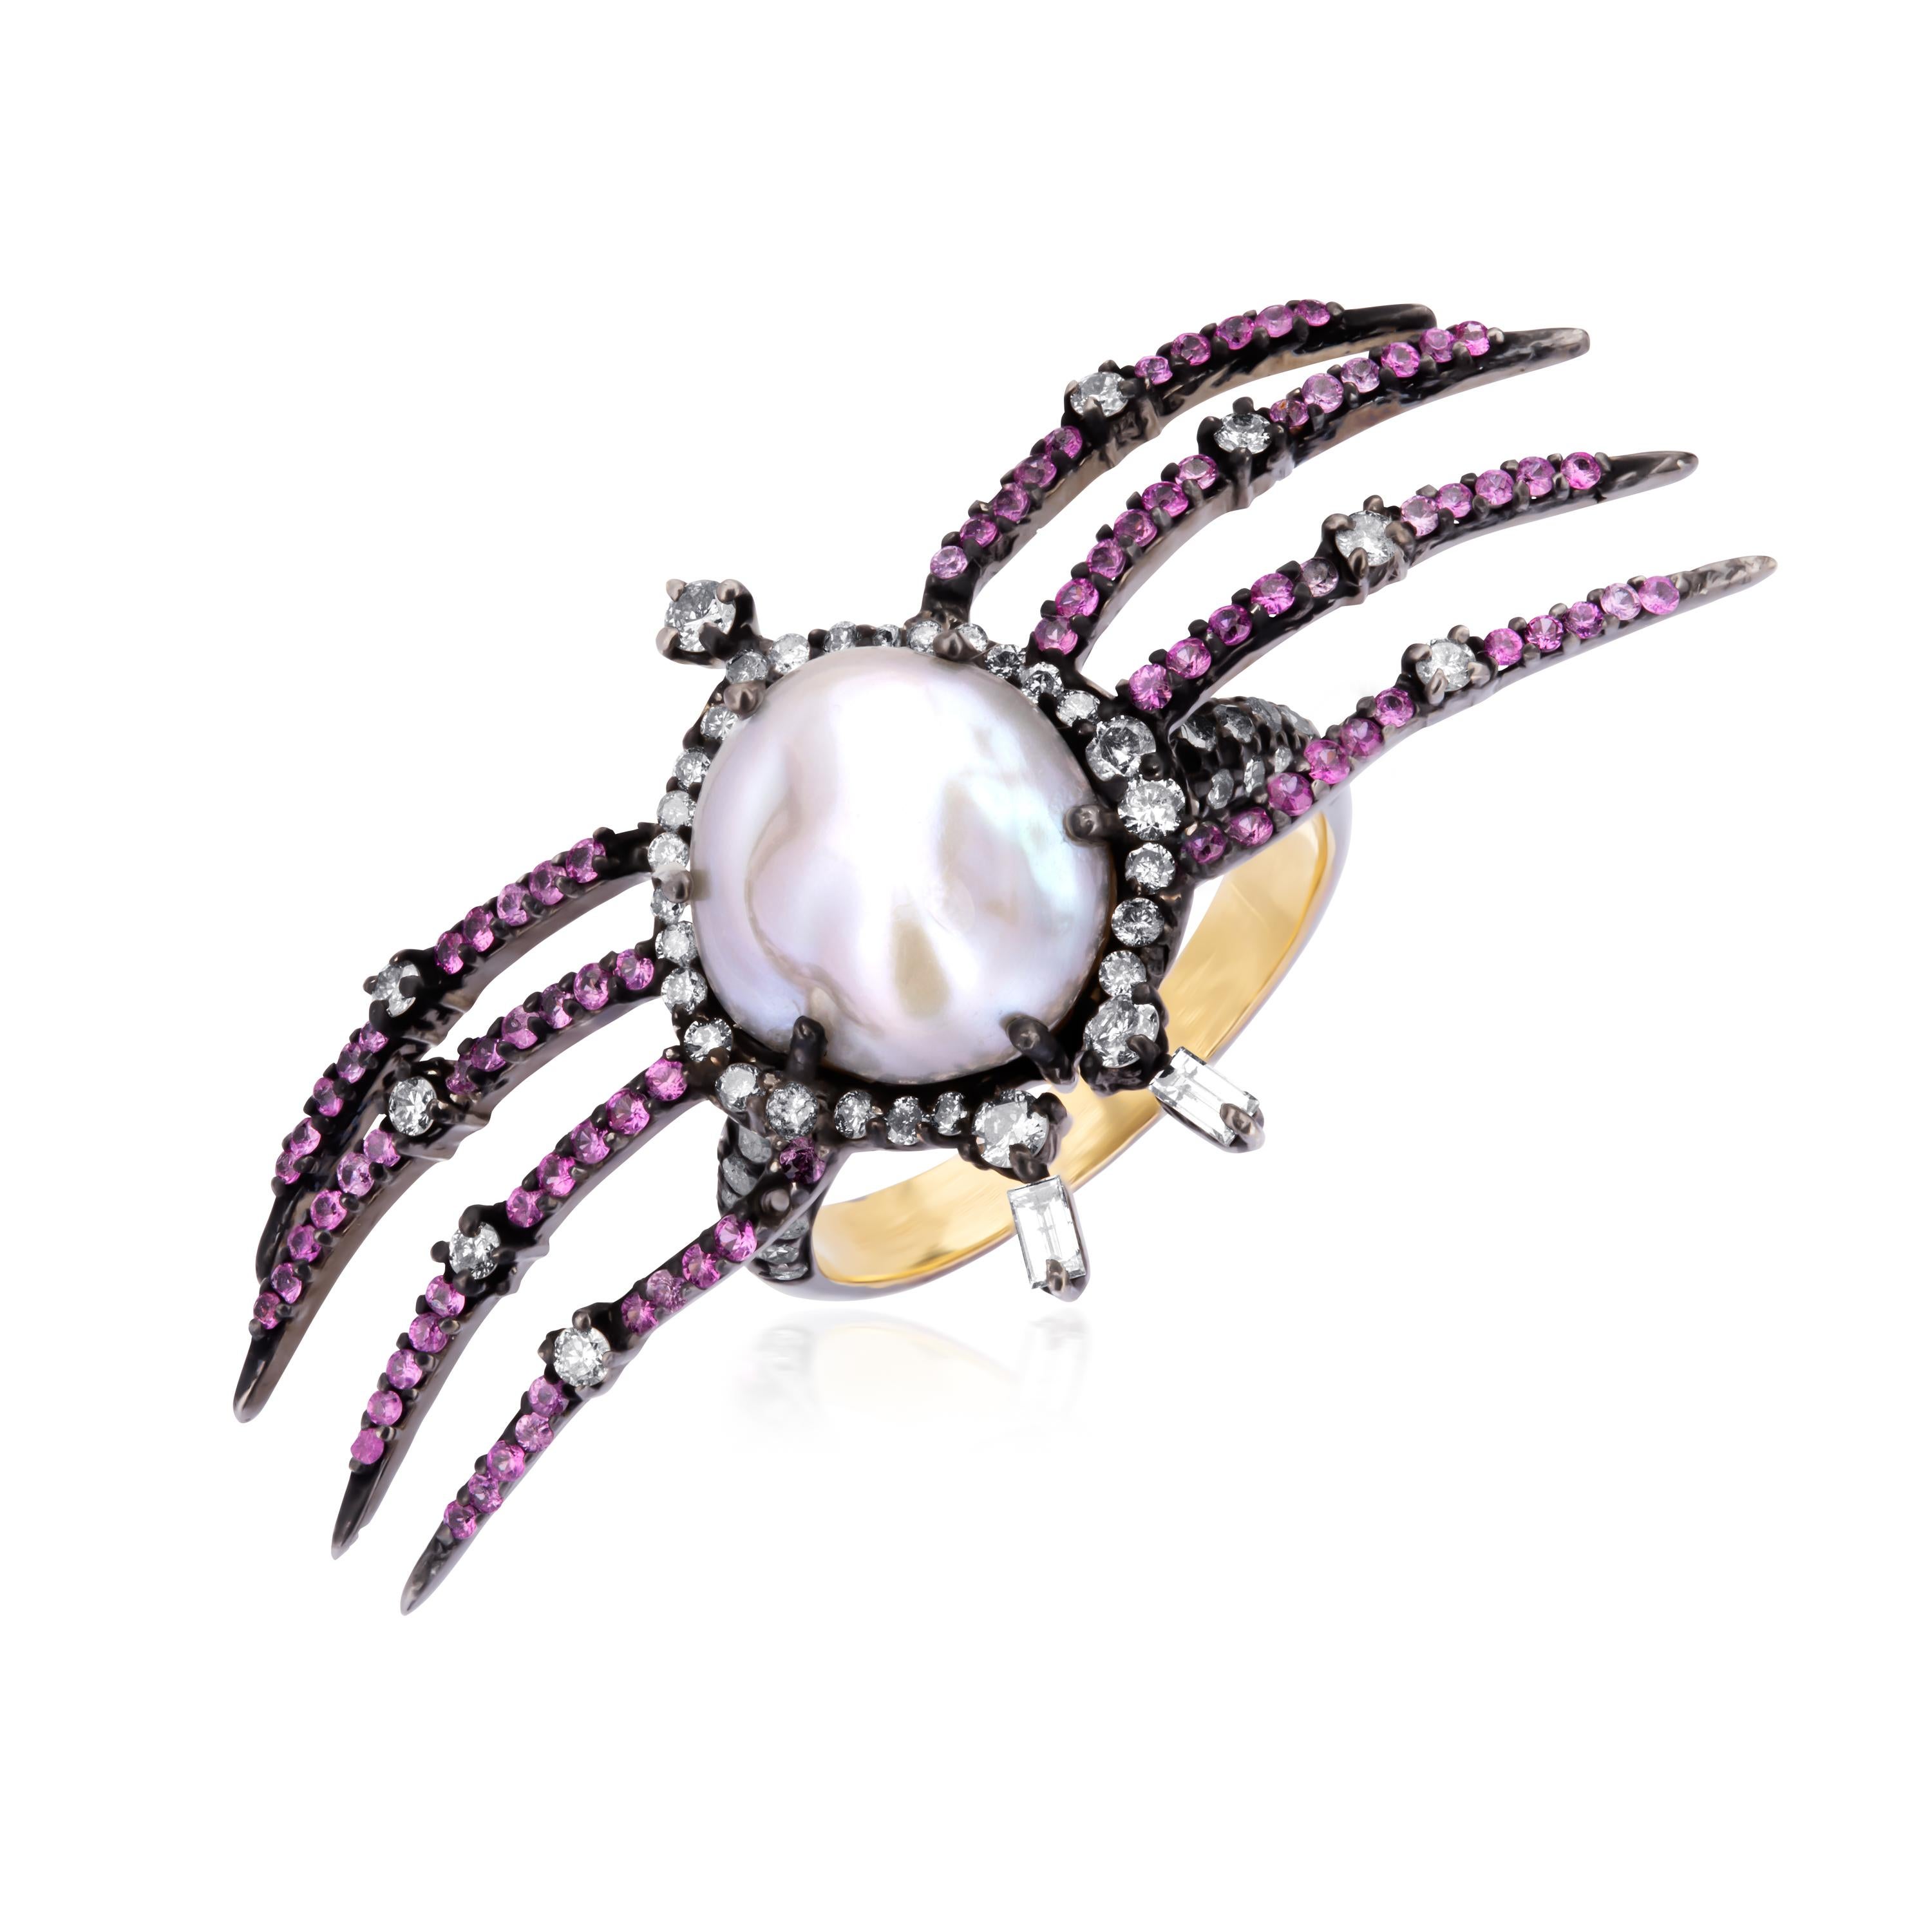 Cette bague victorienne classique met en scène un arachnide astucieux avec une perle satinée au centre, accentuée par des saphirs roses et des diamants (couleur IJ, pureté SI) ornant les pattes de l'arachnide. Réalisée en or 18 carats, cette bague